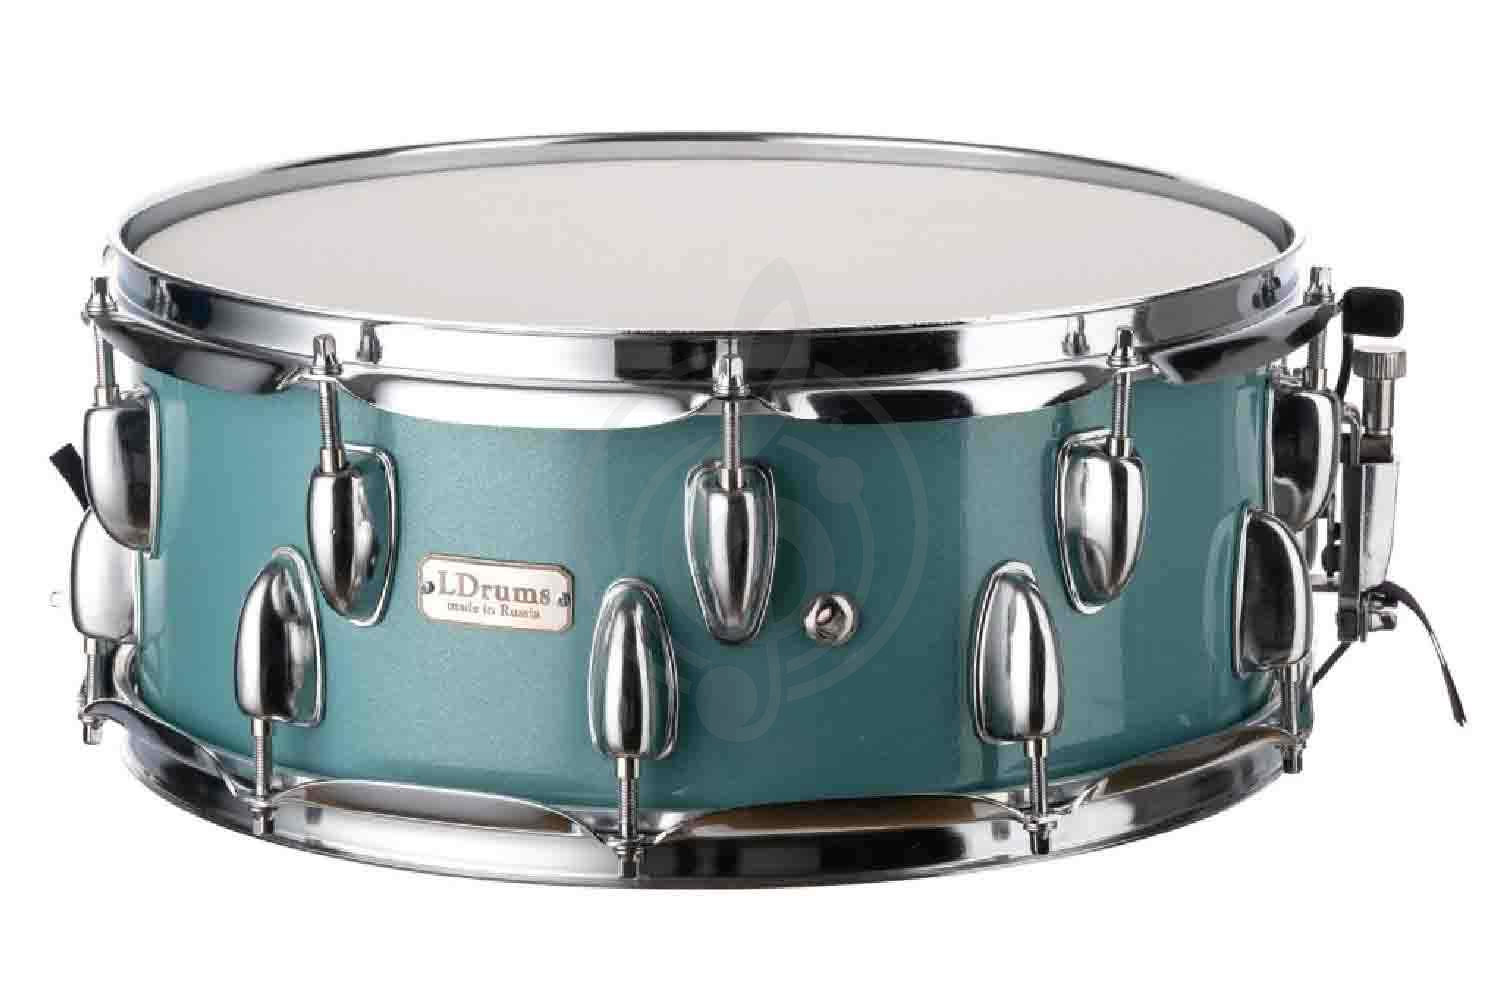 Малый барабан LDrums LD5411SN - Малый барабан, сине-зеленый, 14"х5,5", LDrums LD5411SN в магазине DominantaMusic - фото 1